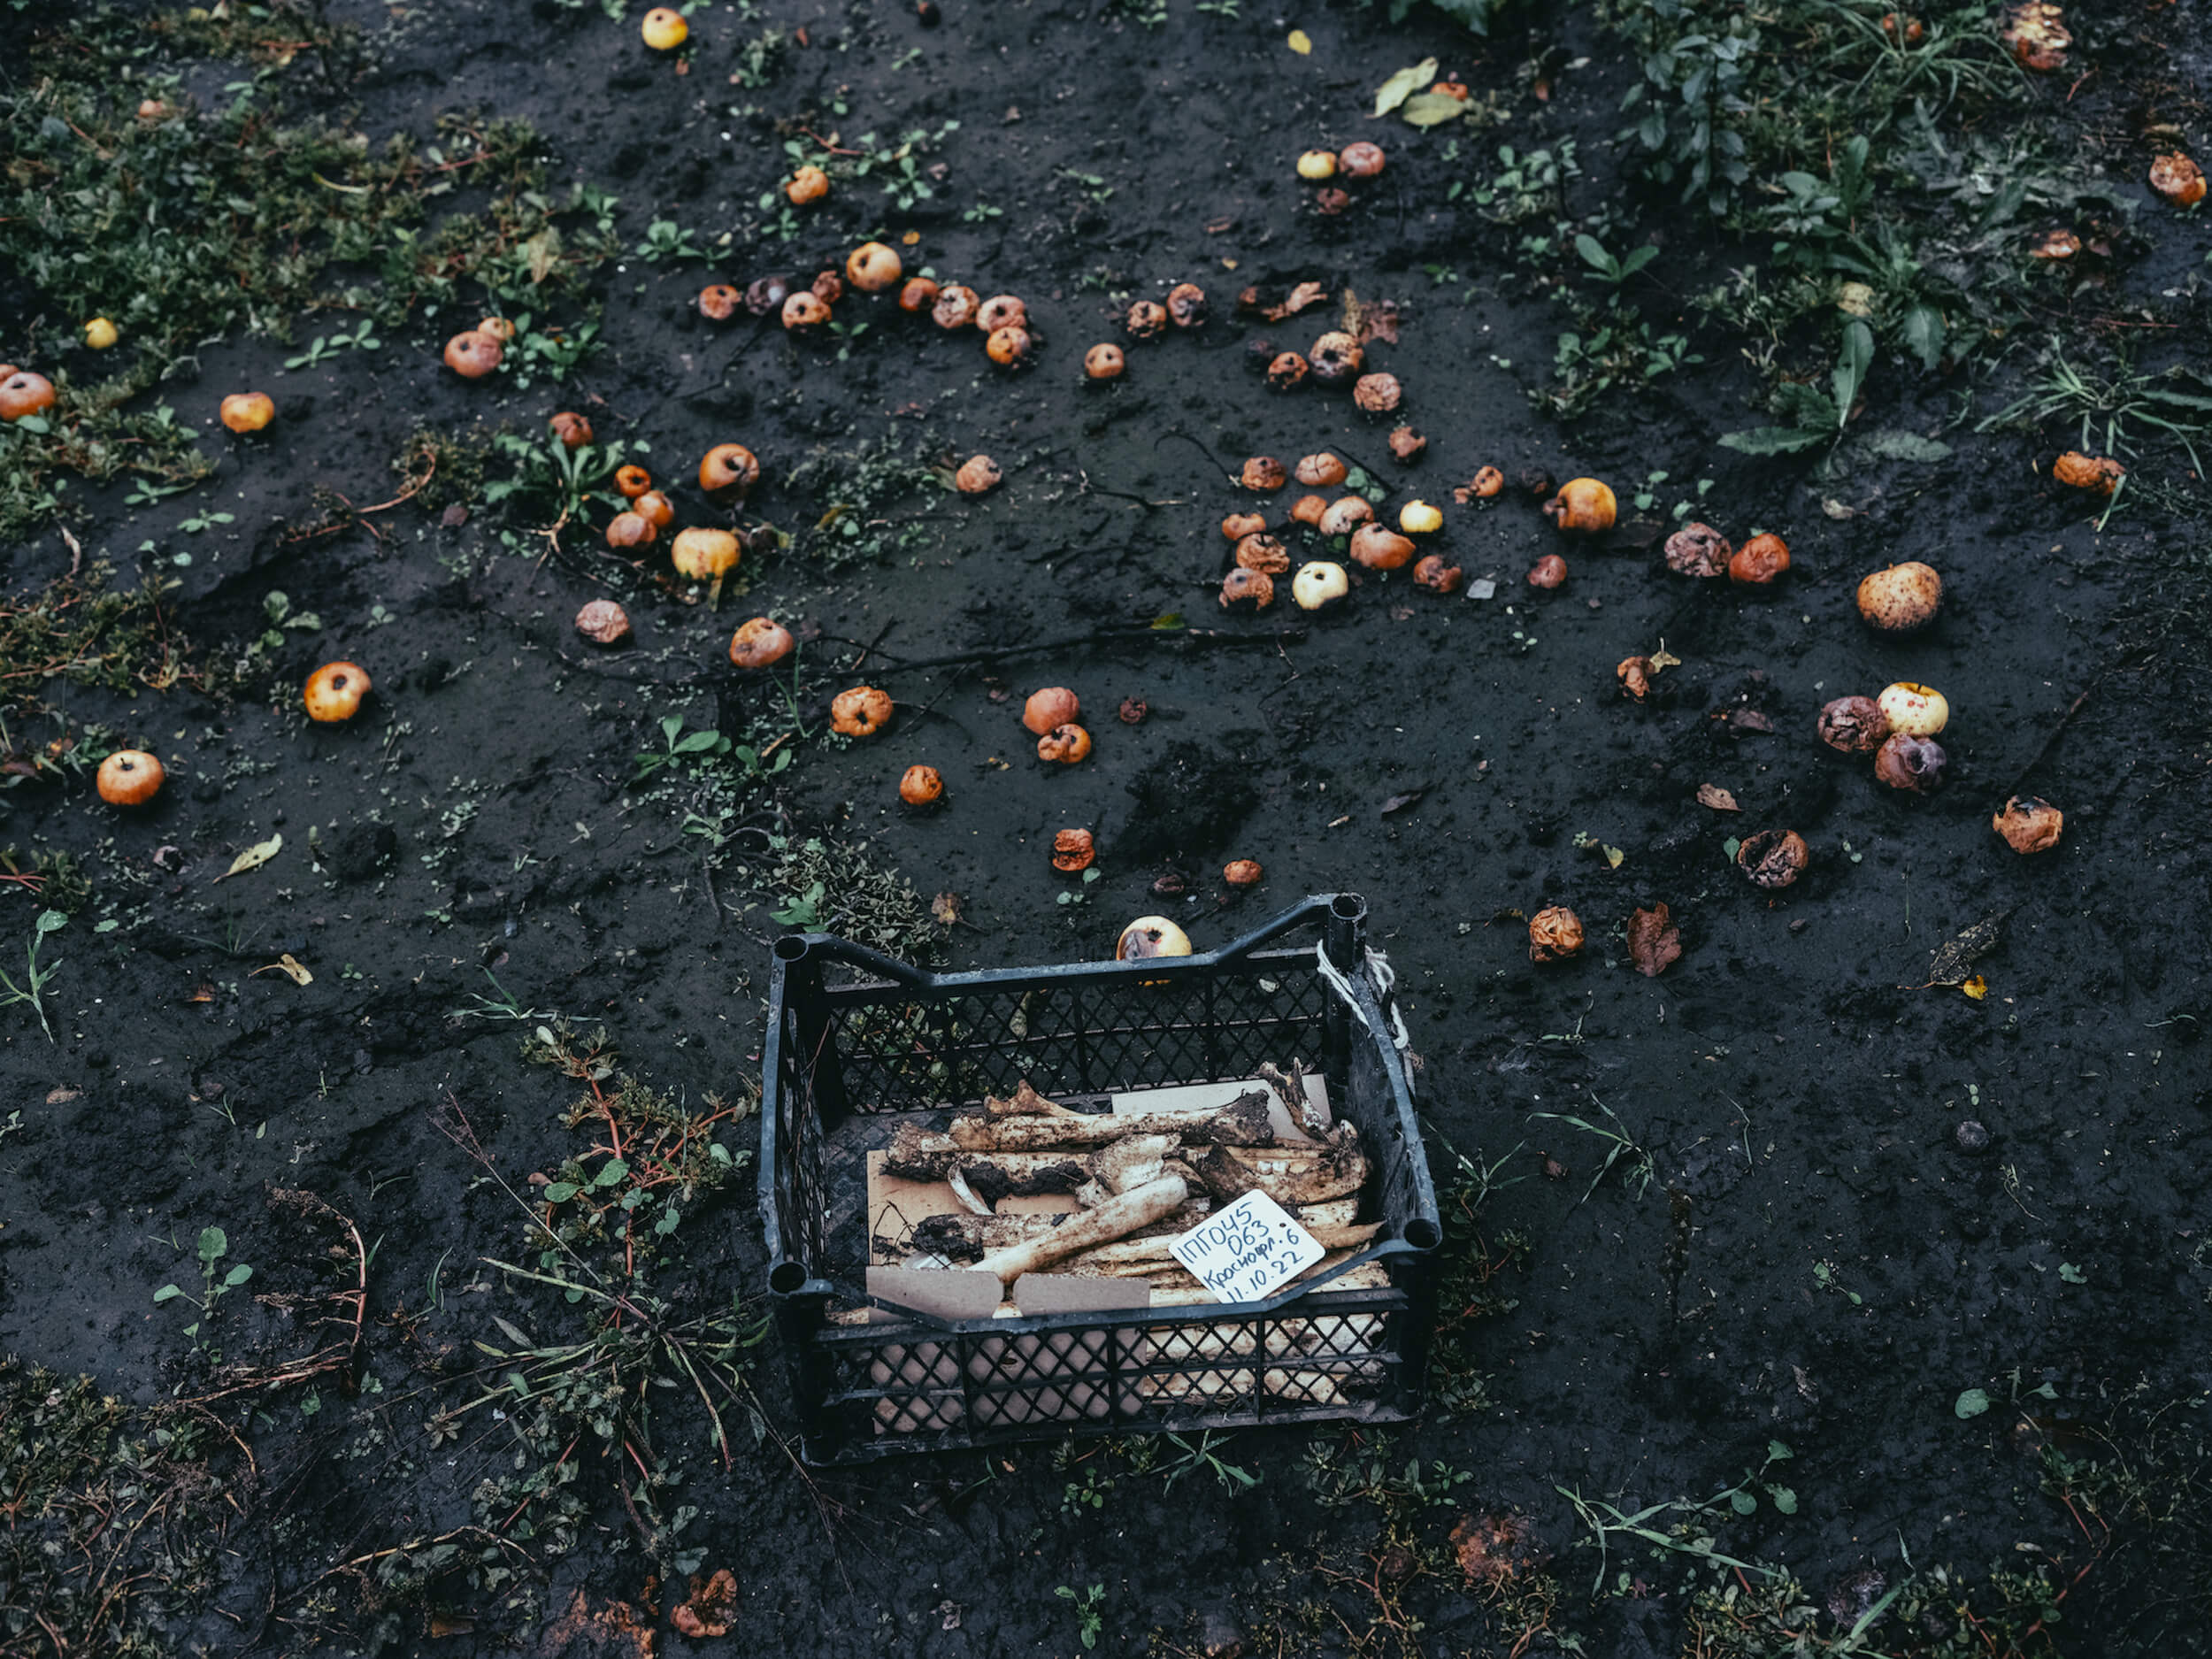 Останки українських прикордонників в ящику з яблуками на одному з подвір'їв, місто Лиман, Донецька область, 11 жовтня